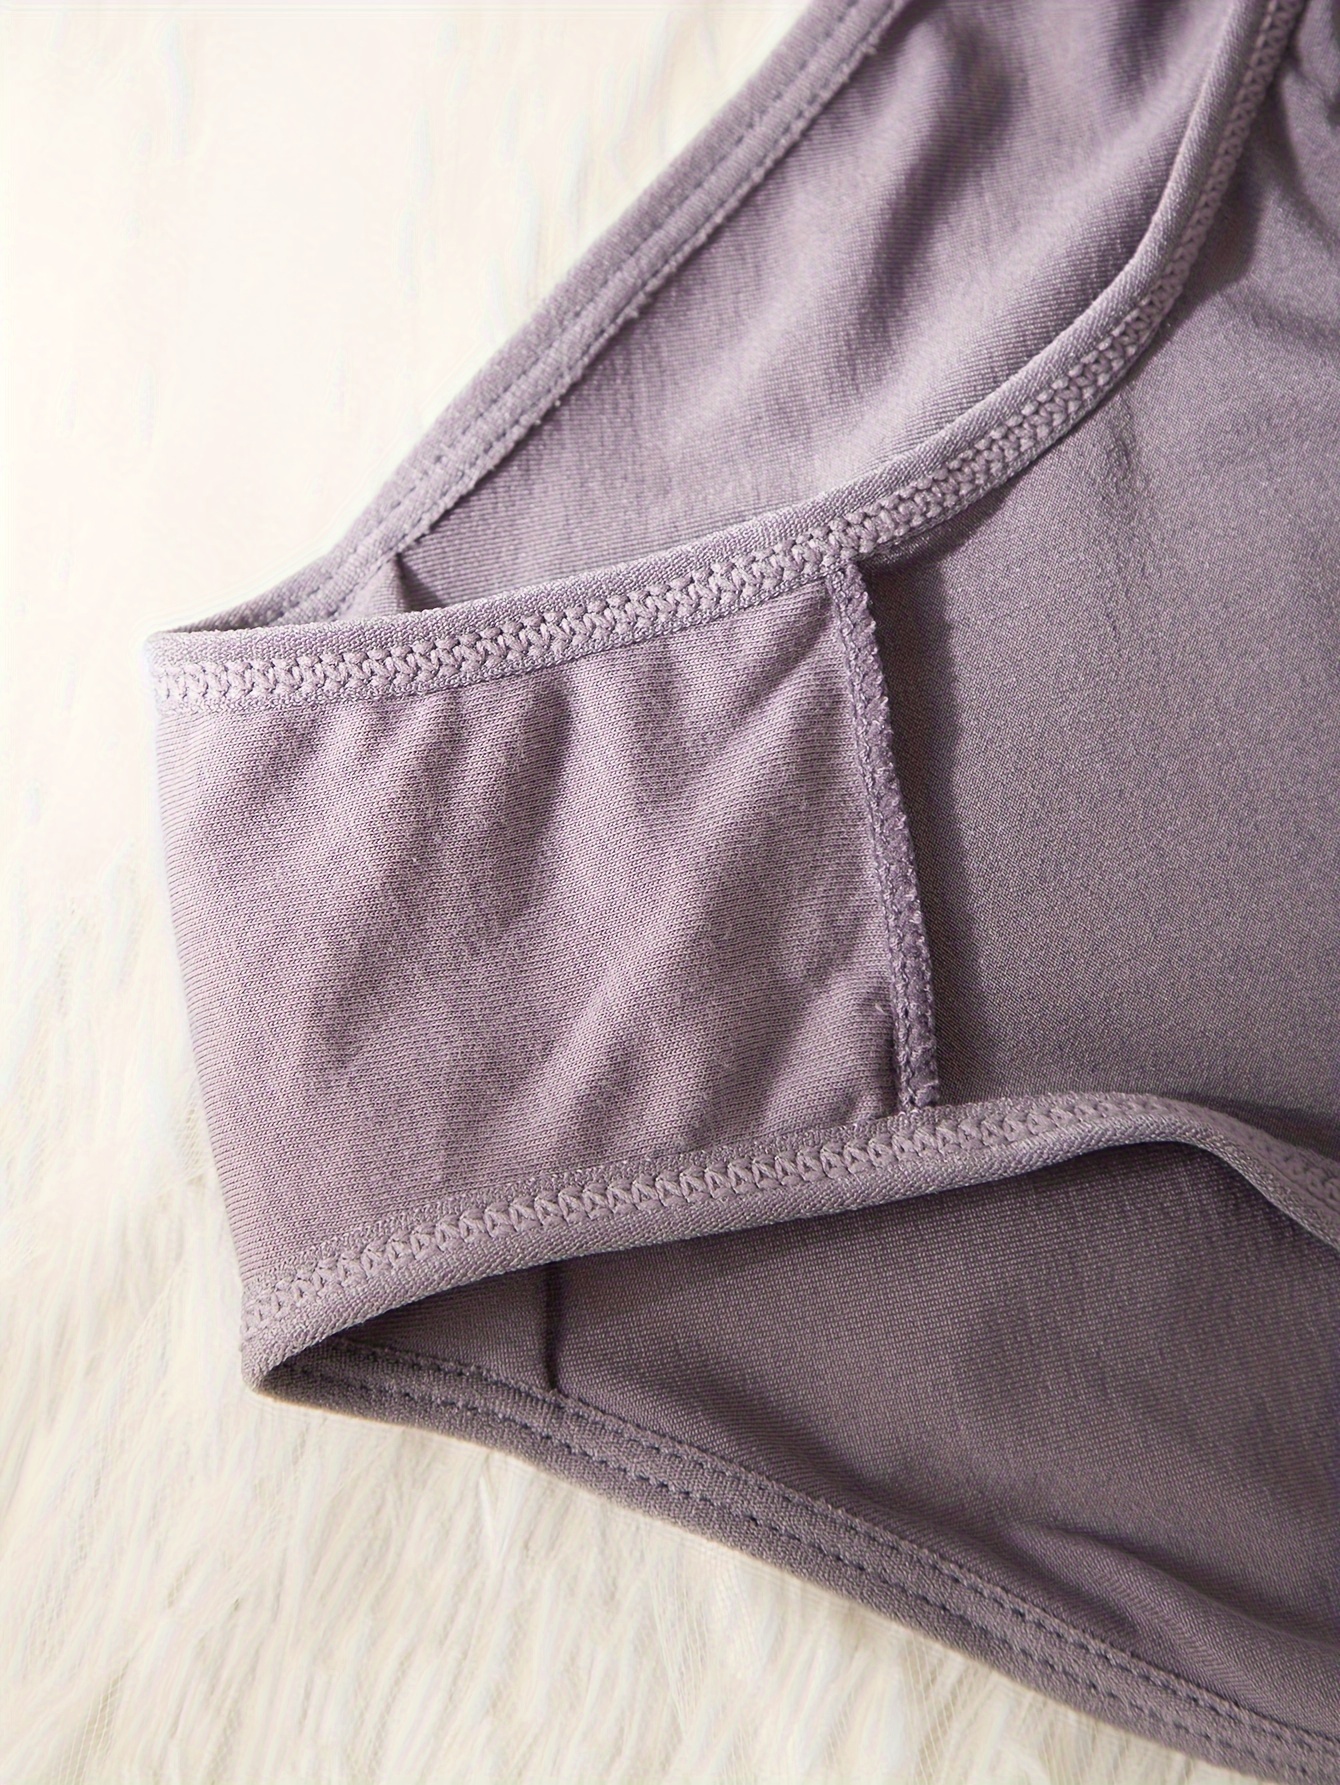 2 Sets Contrast Lace Bra & Panties, Push Up Bra & Elastic Panties Lingerie  Set, Women's Lingerie & Underwear